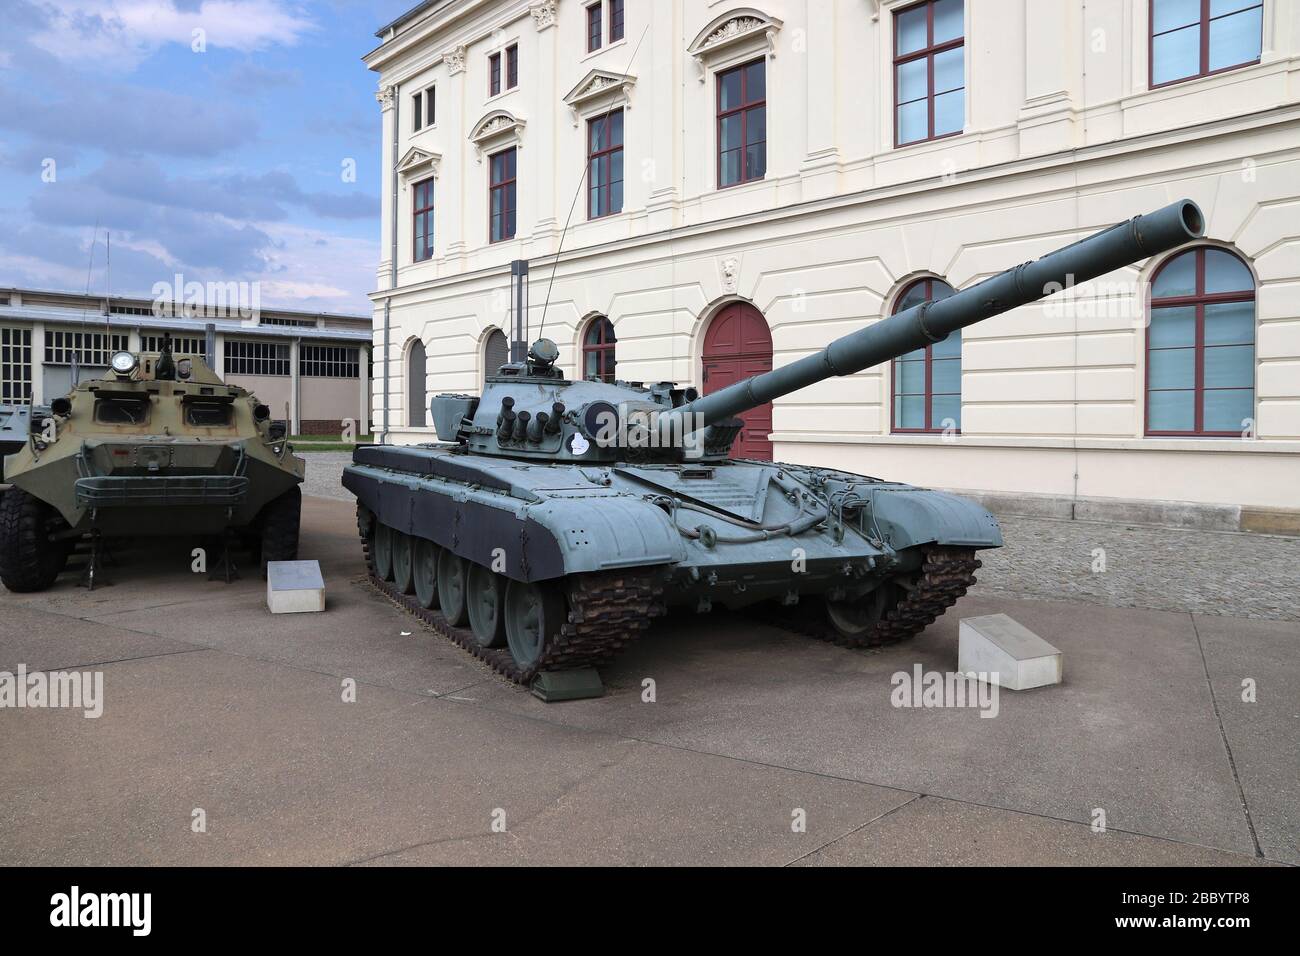 DRESDE, ALLEMAGNE - 10 MAI 2018 : exposition extérieure devant le musée d'histoire militaire de la Bundeswehr à Dresde, Allemagne. T-72 batterie principale soviétique et russe Banque D'Images